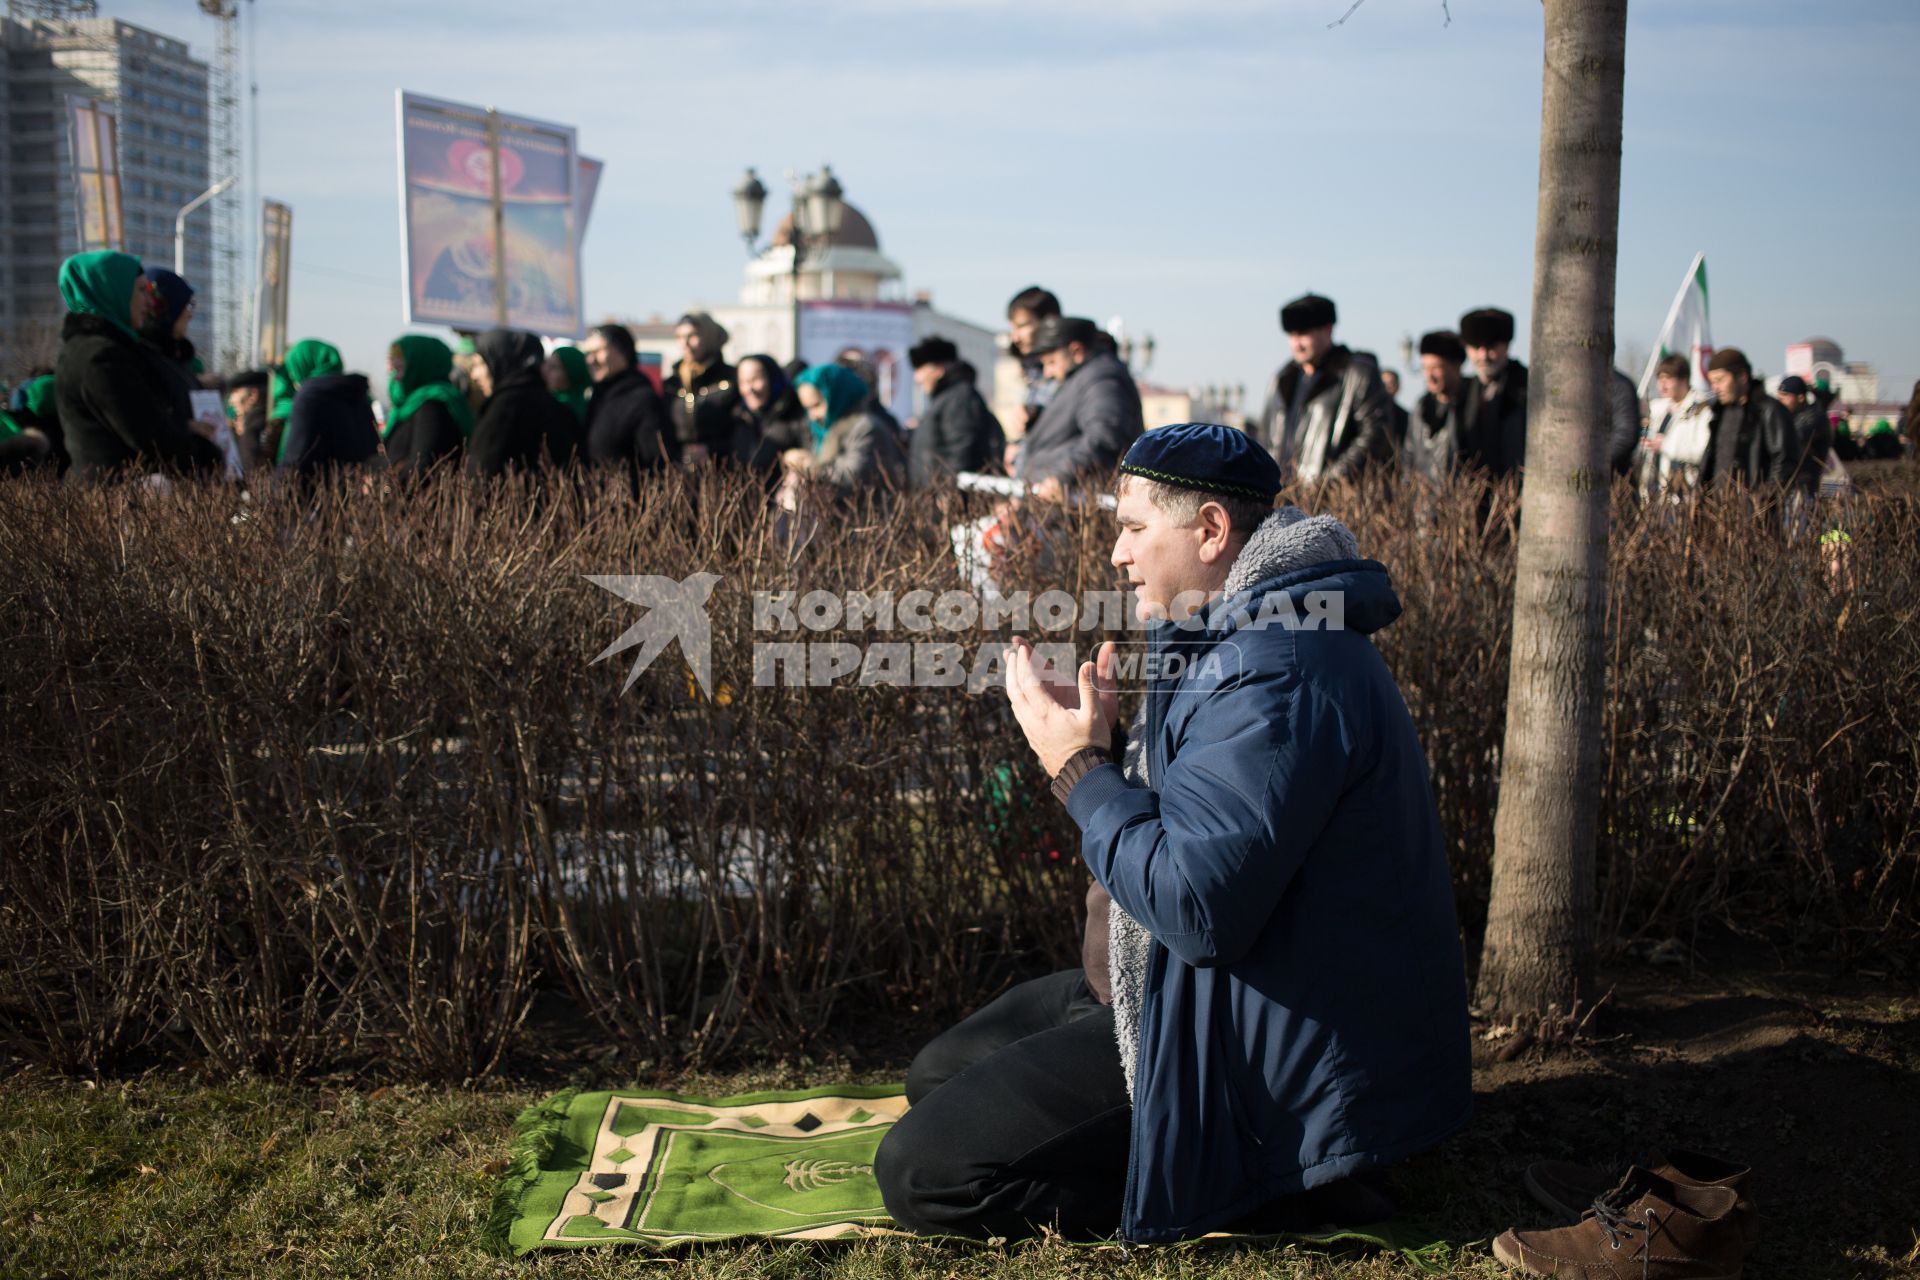 Митинг в Грозном против карикатур на пророка Мухаммеда, которые рисует франзуский журнал \"Шарли Эбдо\". Мероприятие завершилось массовым намазом.